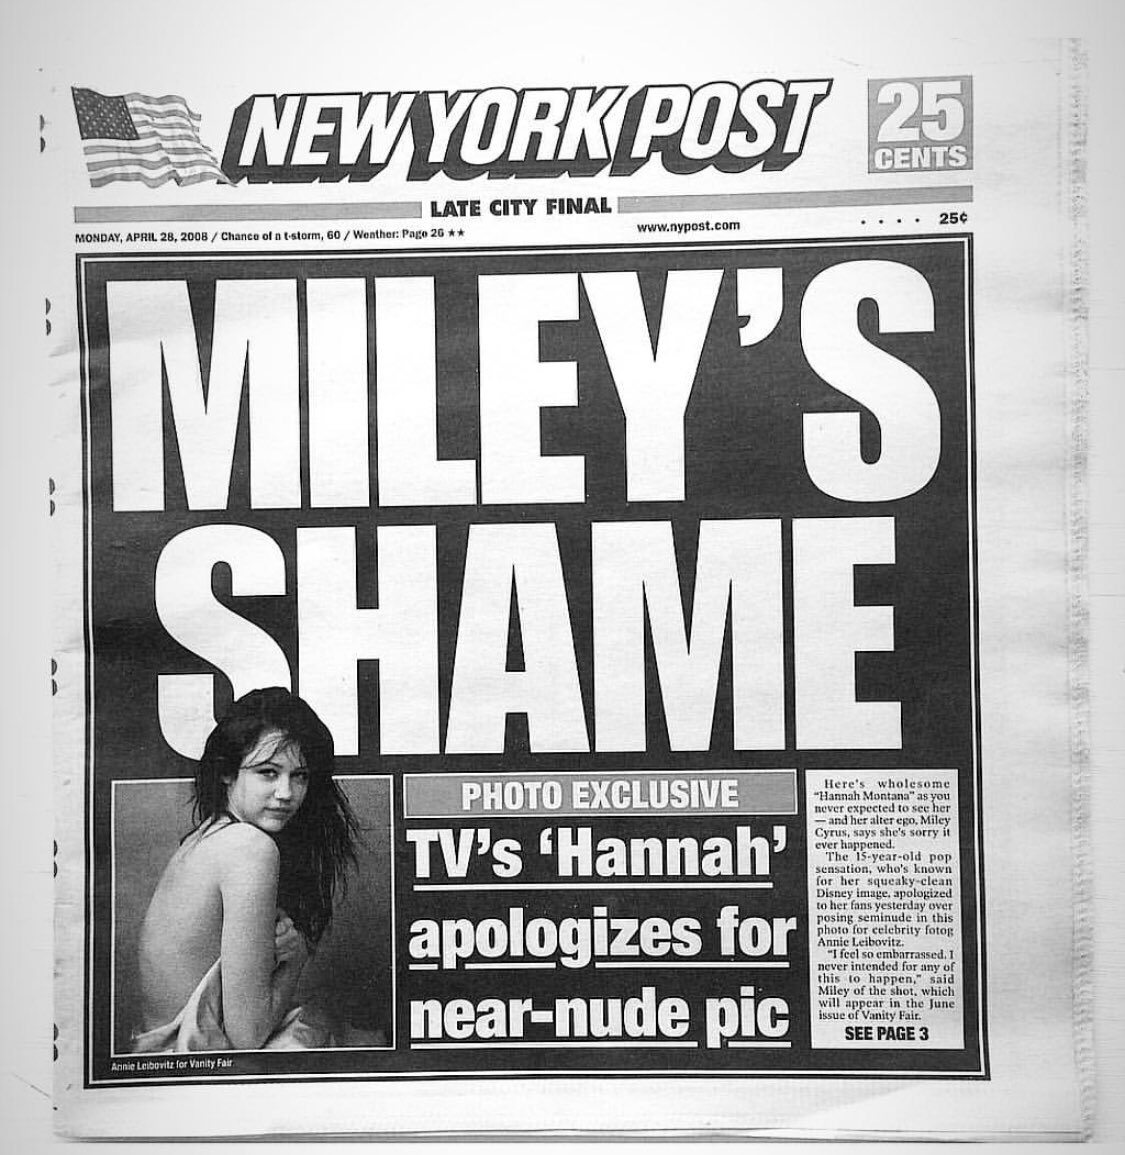 Capture d'écran du compte Twitter de Miley Cyrus partageant la couverture du quotidien New York Post.